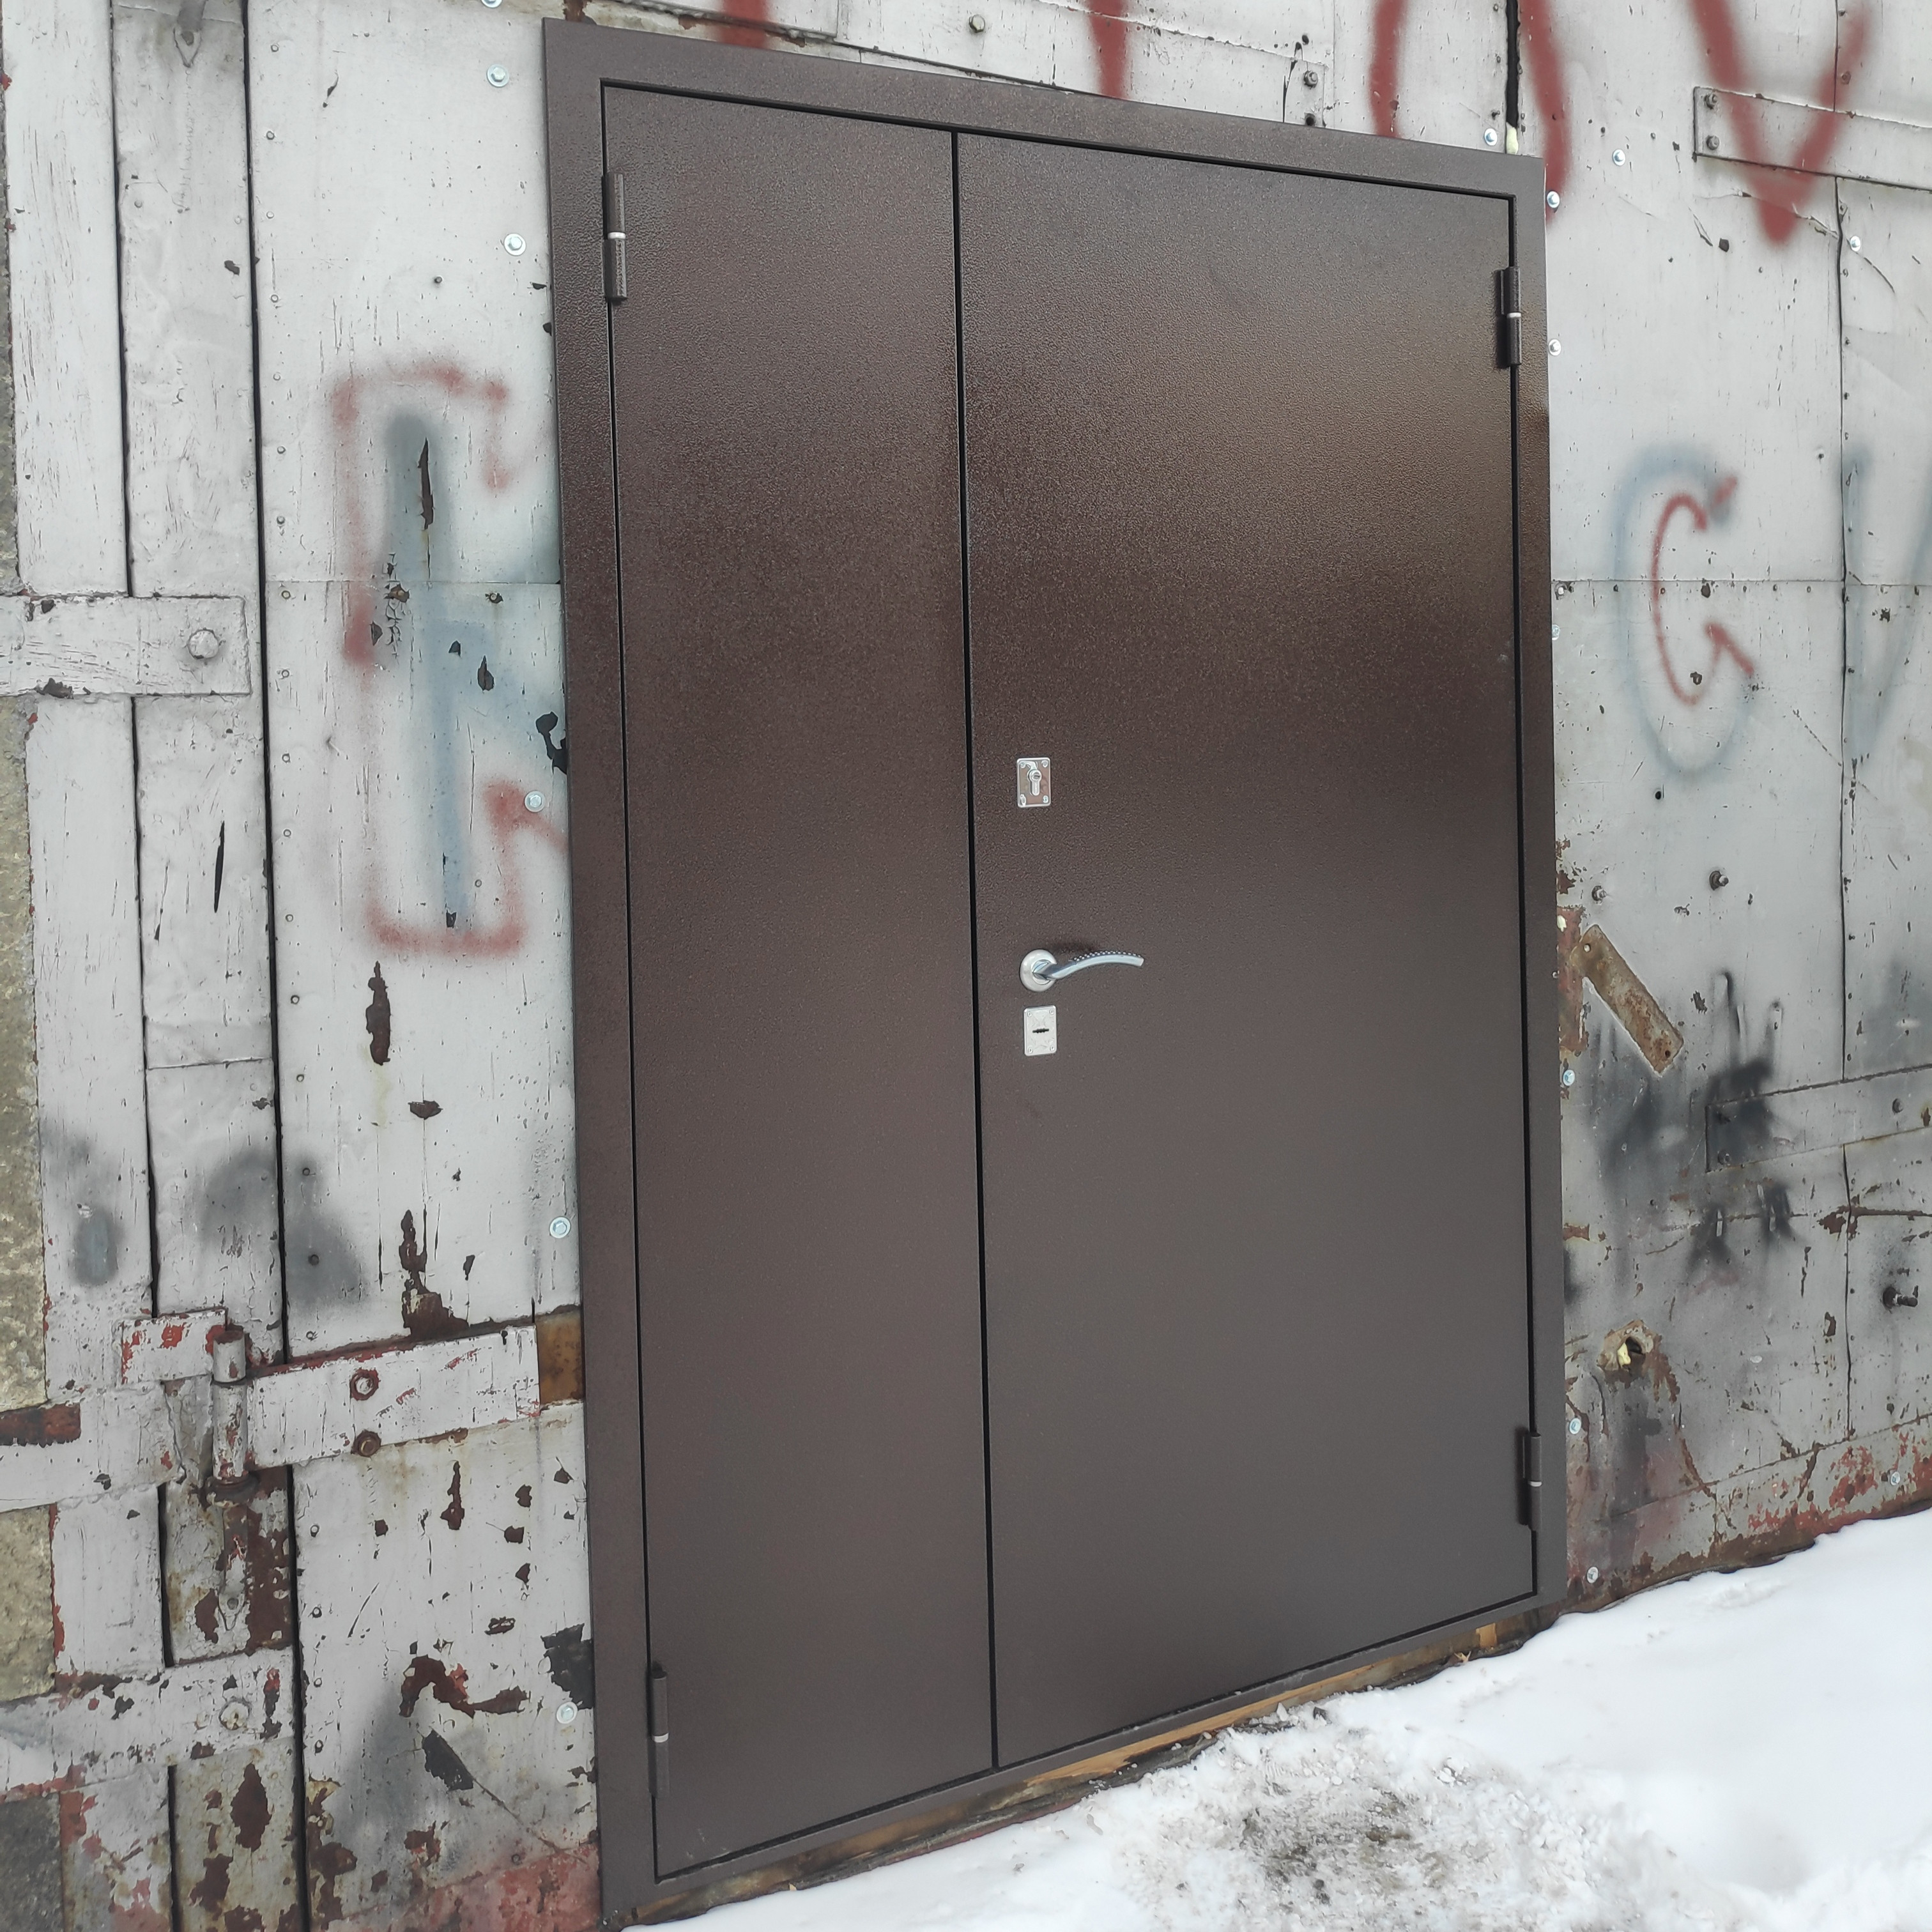 Завод металлических дверей. Дверь стальная для вентиляционных камер утепленная. Ярославский завод металлических дверей. Td-731 дверь металлическая.